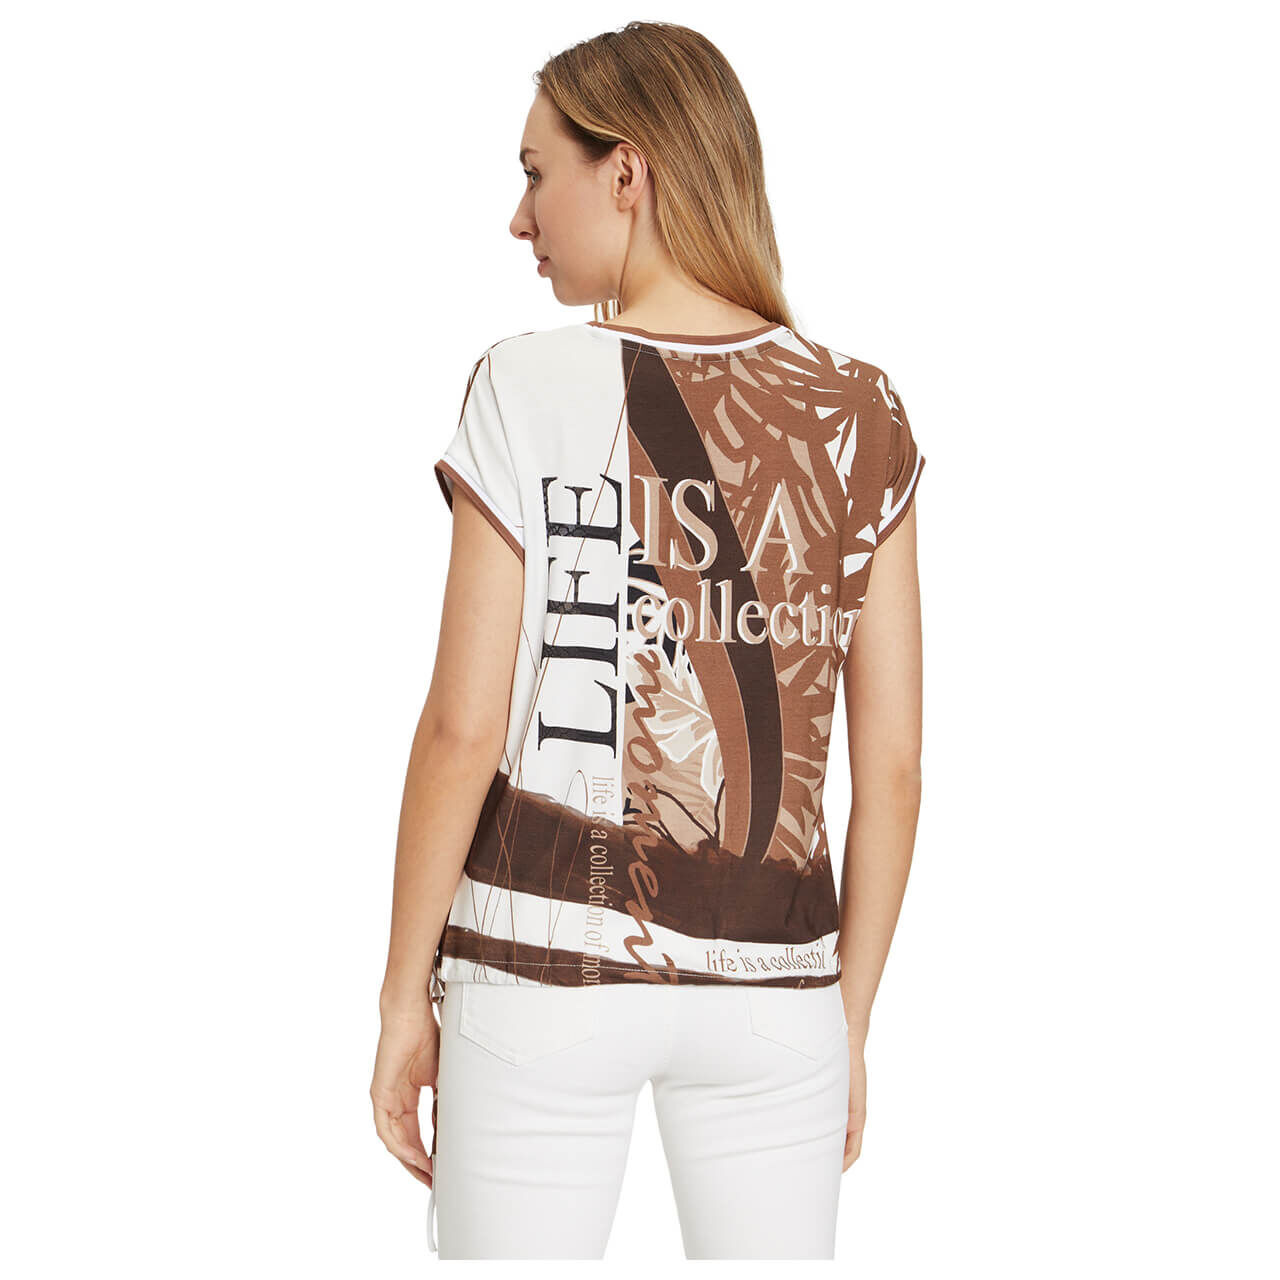 Betty Barclay T-Shirt für Damen in Dunkelbraun mit Print, FarbNr.: 7810